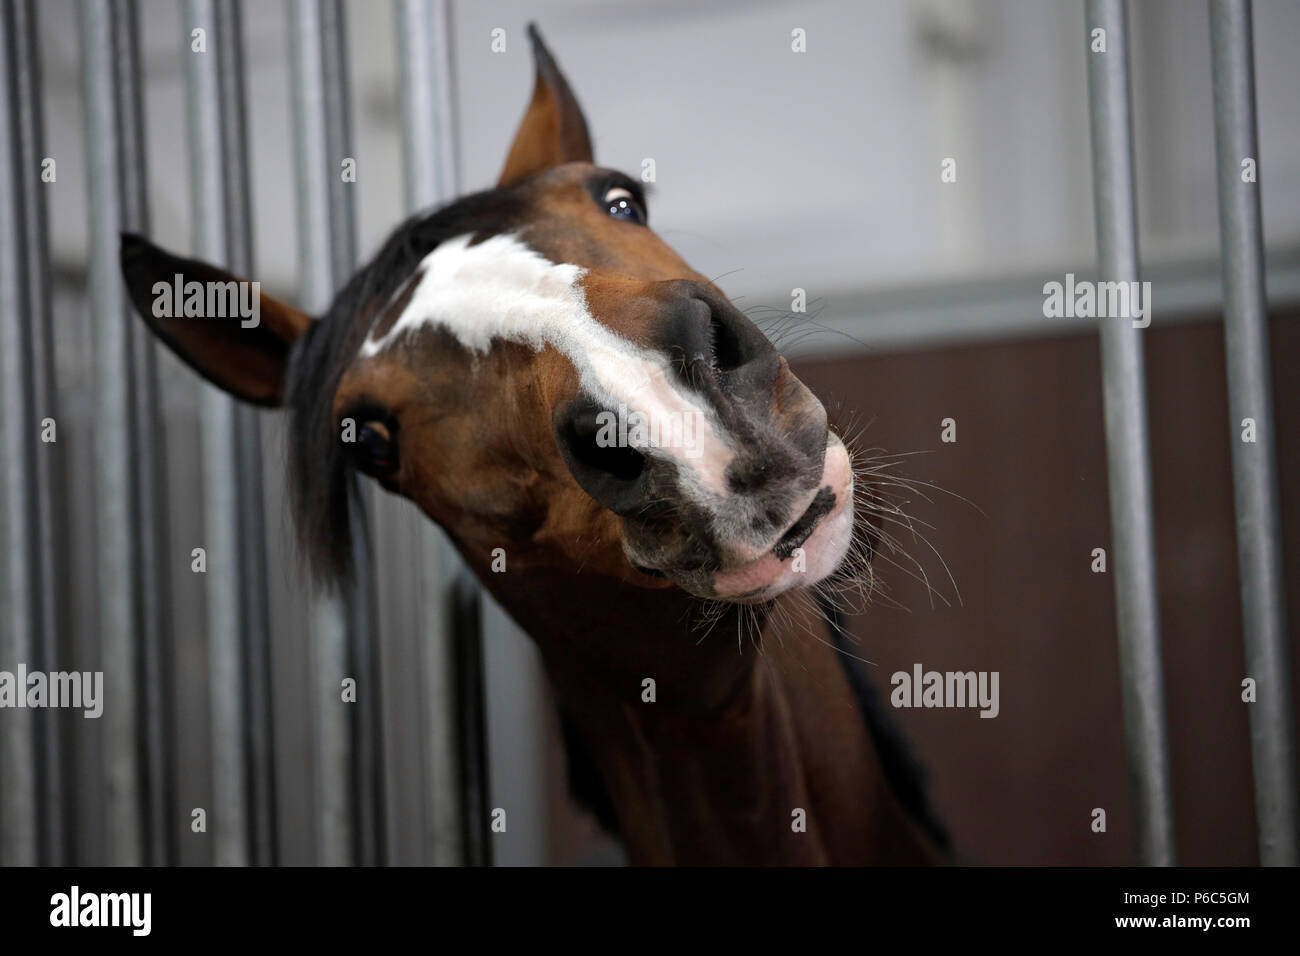 Doha, cavallo in una scatola mendica per goodies Foto Stock